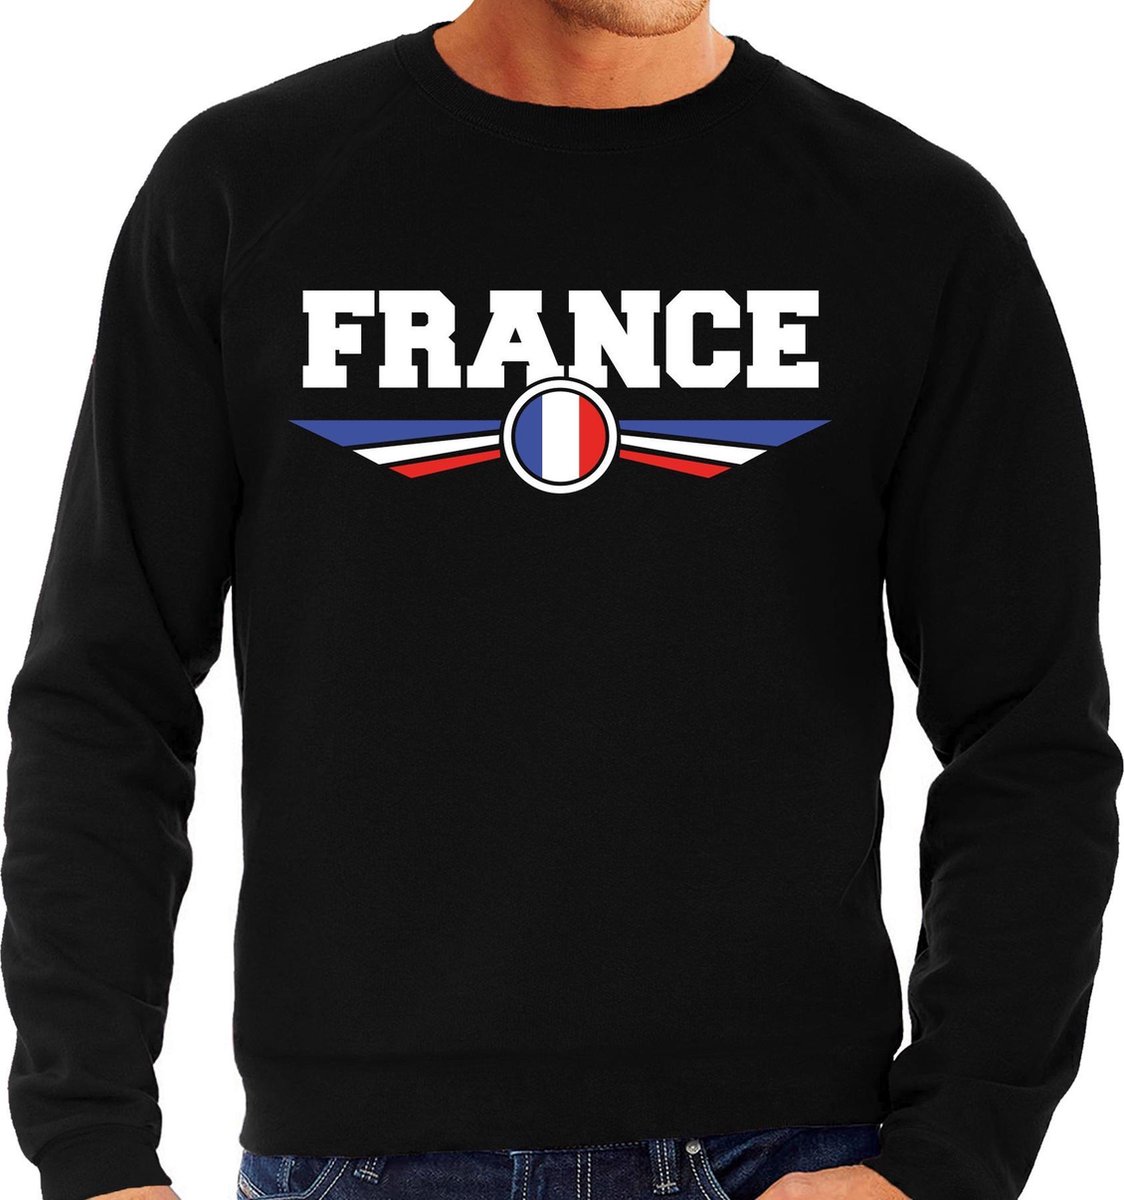 Frankrijk / France landen sweater / trui zwart heren S